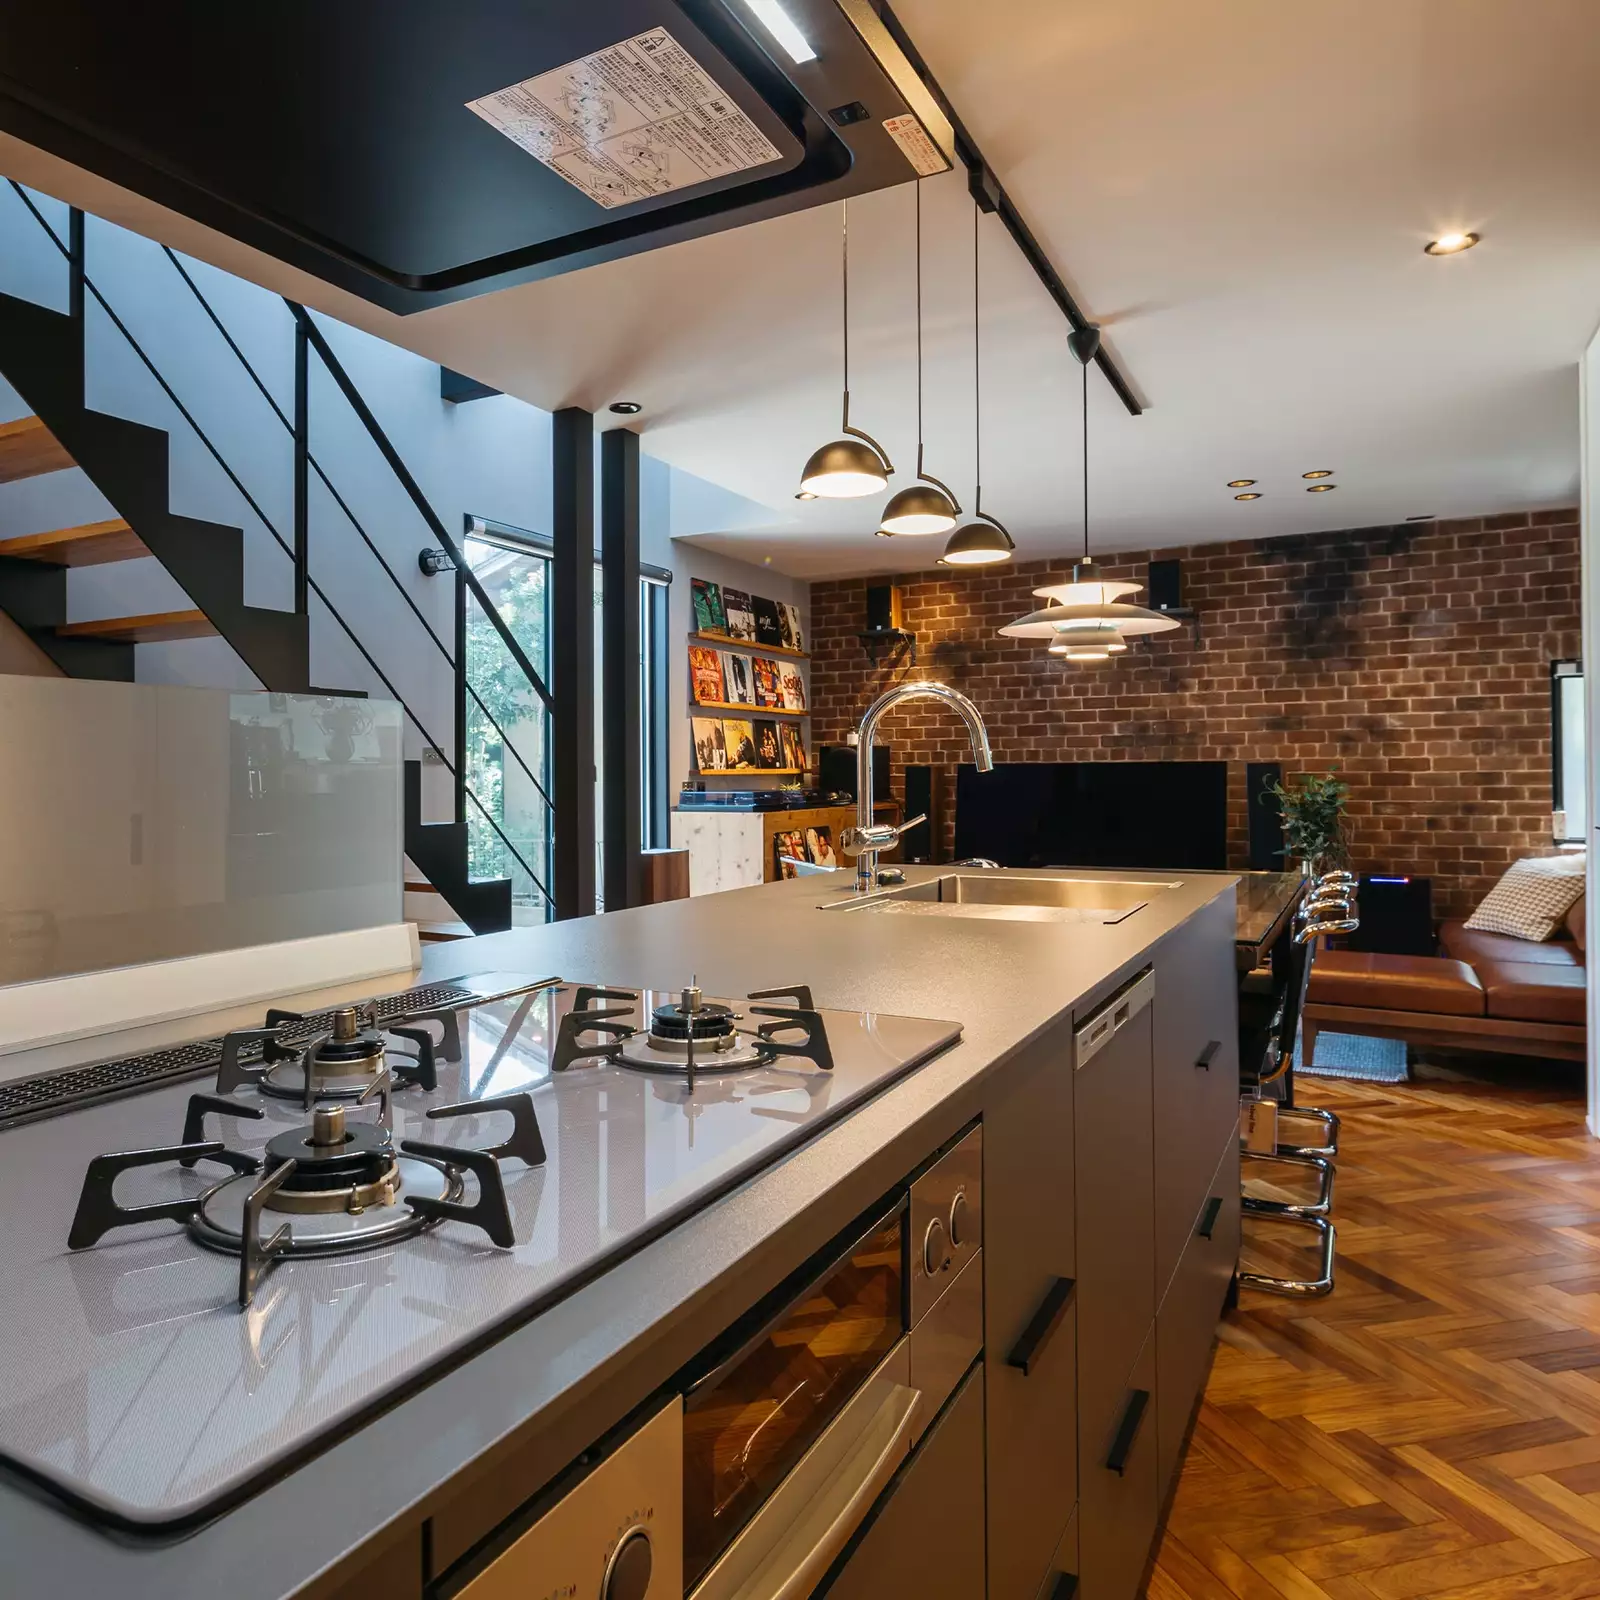 R+houseの物件のキッチンの写真です。アイランドキッチンのよこにダイニングテーブルが繋がる。キッチンからは洗面室や階段、リビングが見渡せる。